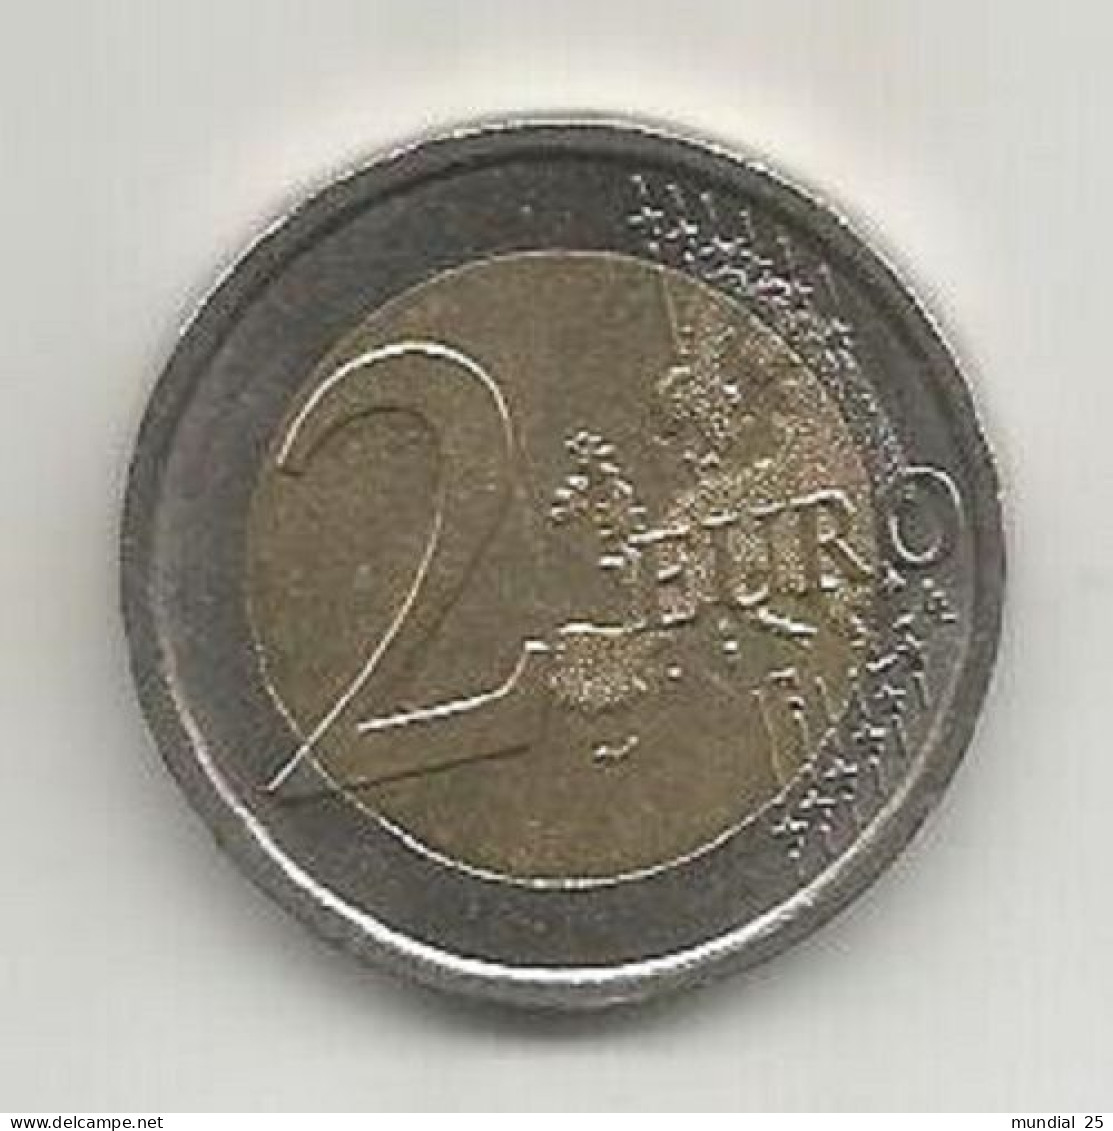 ITALY 2 EURO 2012 (R) - EUROCOINAGE, 10th ANNIVERSARY - Italie